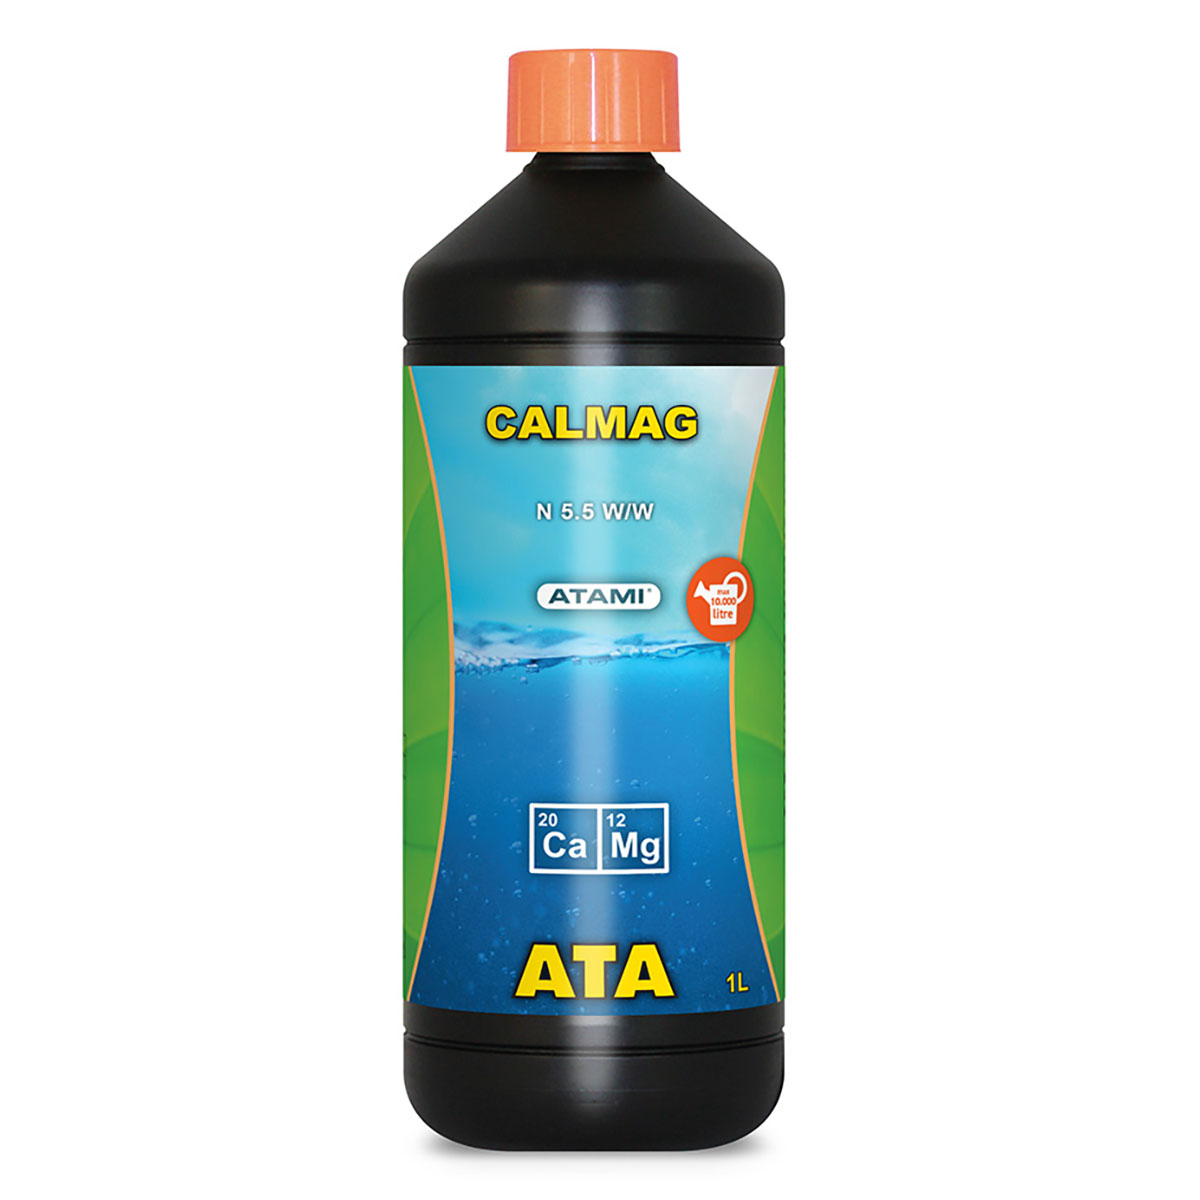 ATA CALMAG(カルマグ) 1L ATAMI 水耕栽培 土耕栽培 成長促進剤